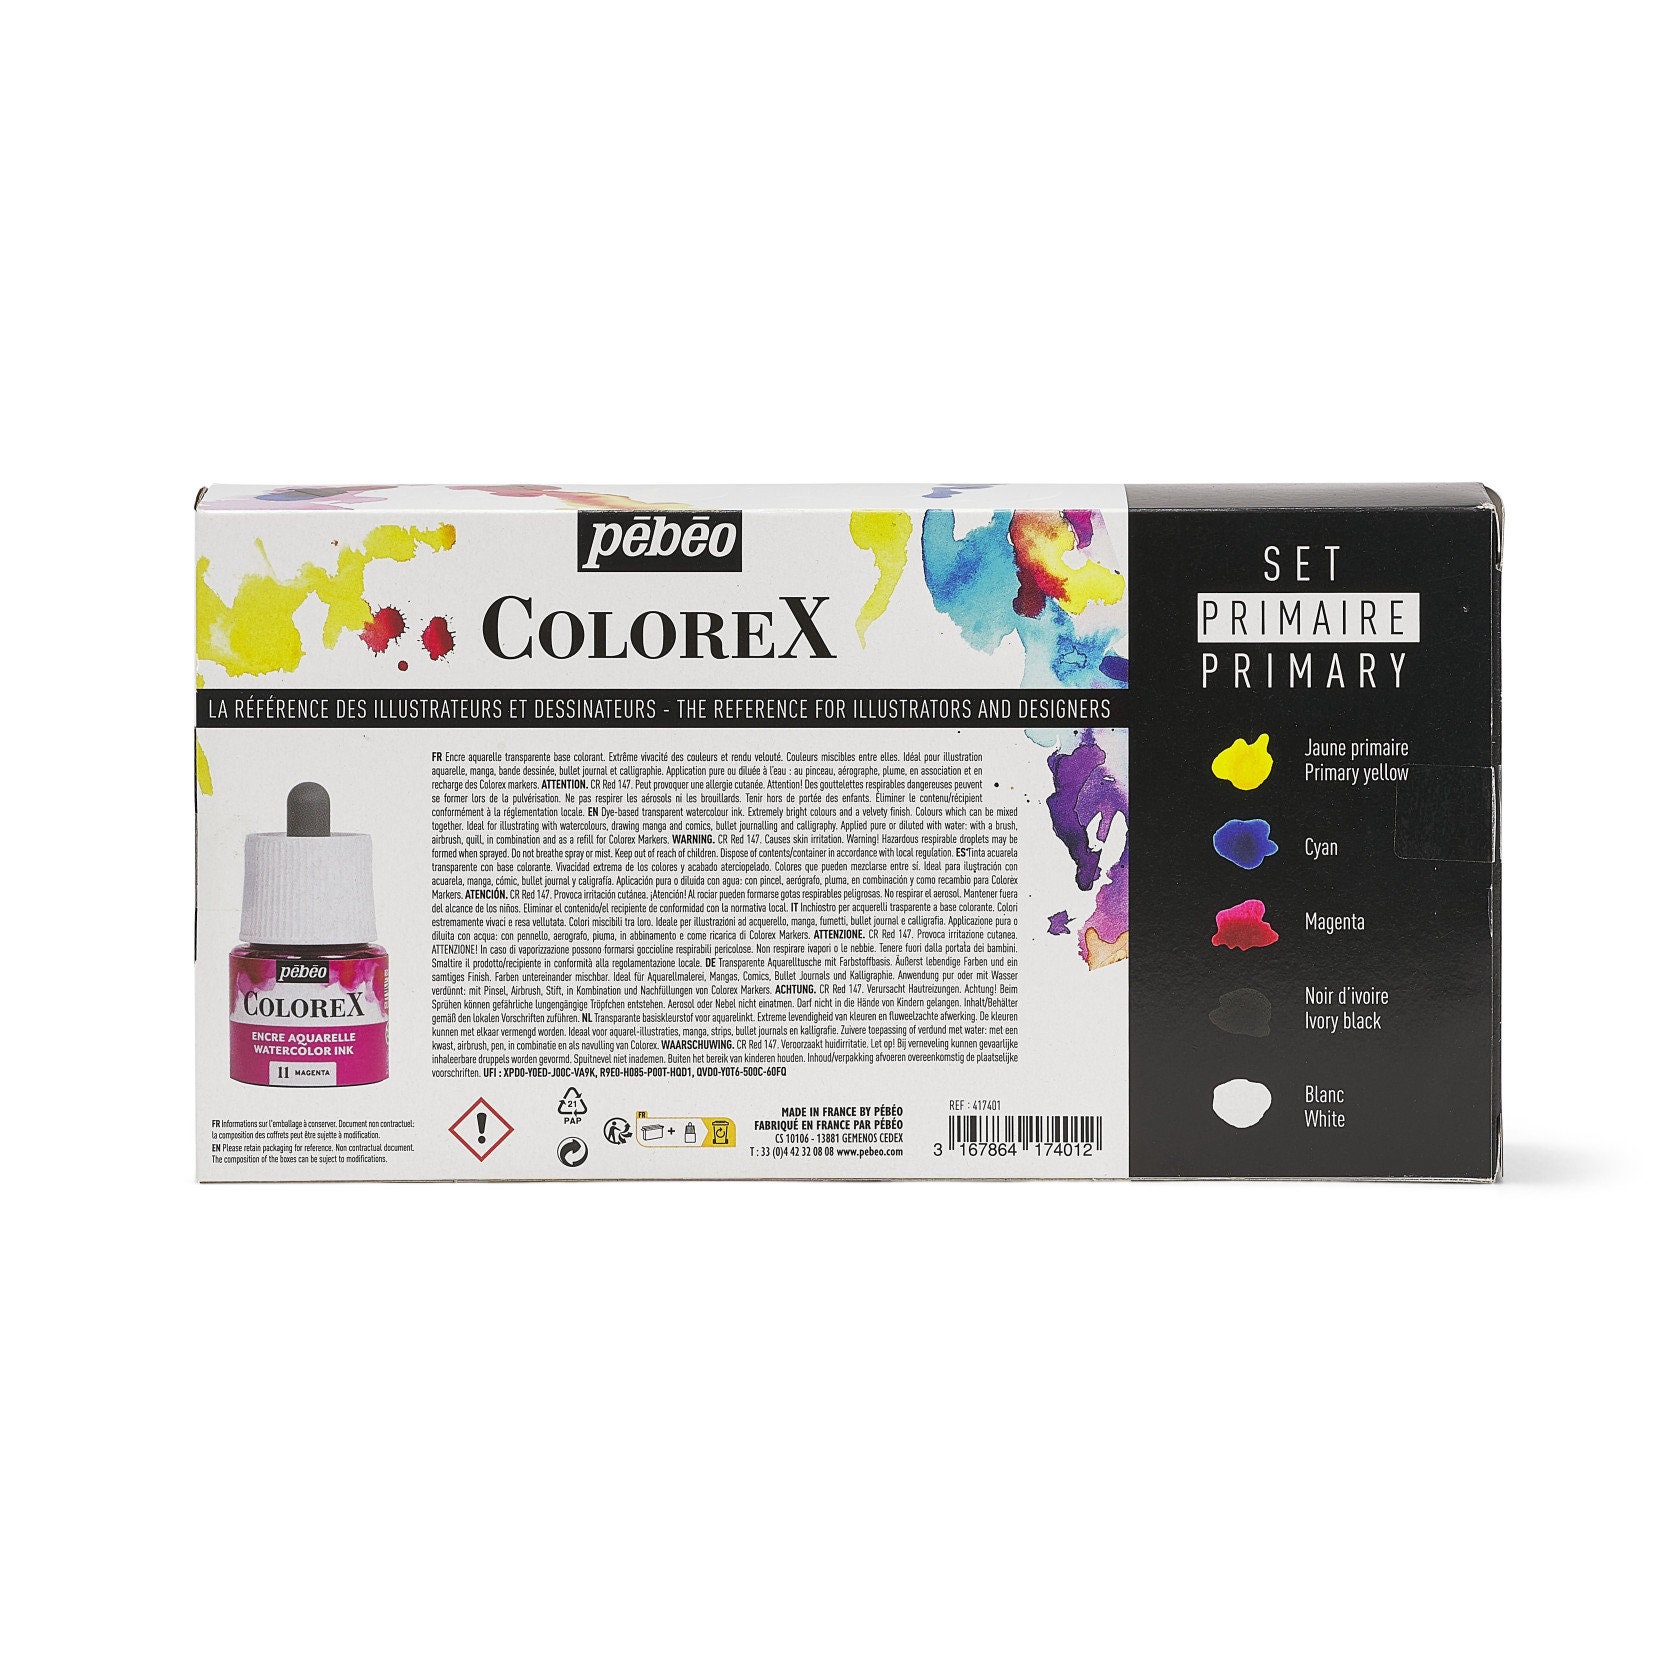 Pebeo Colorex Encre Aquarelle Primaire Set 5 x 45 ml -  France